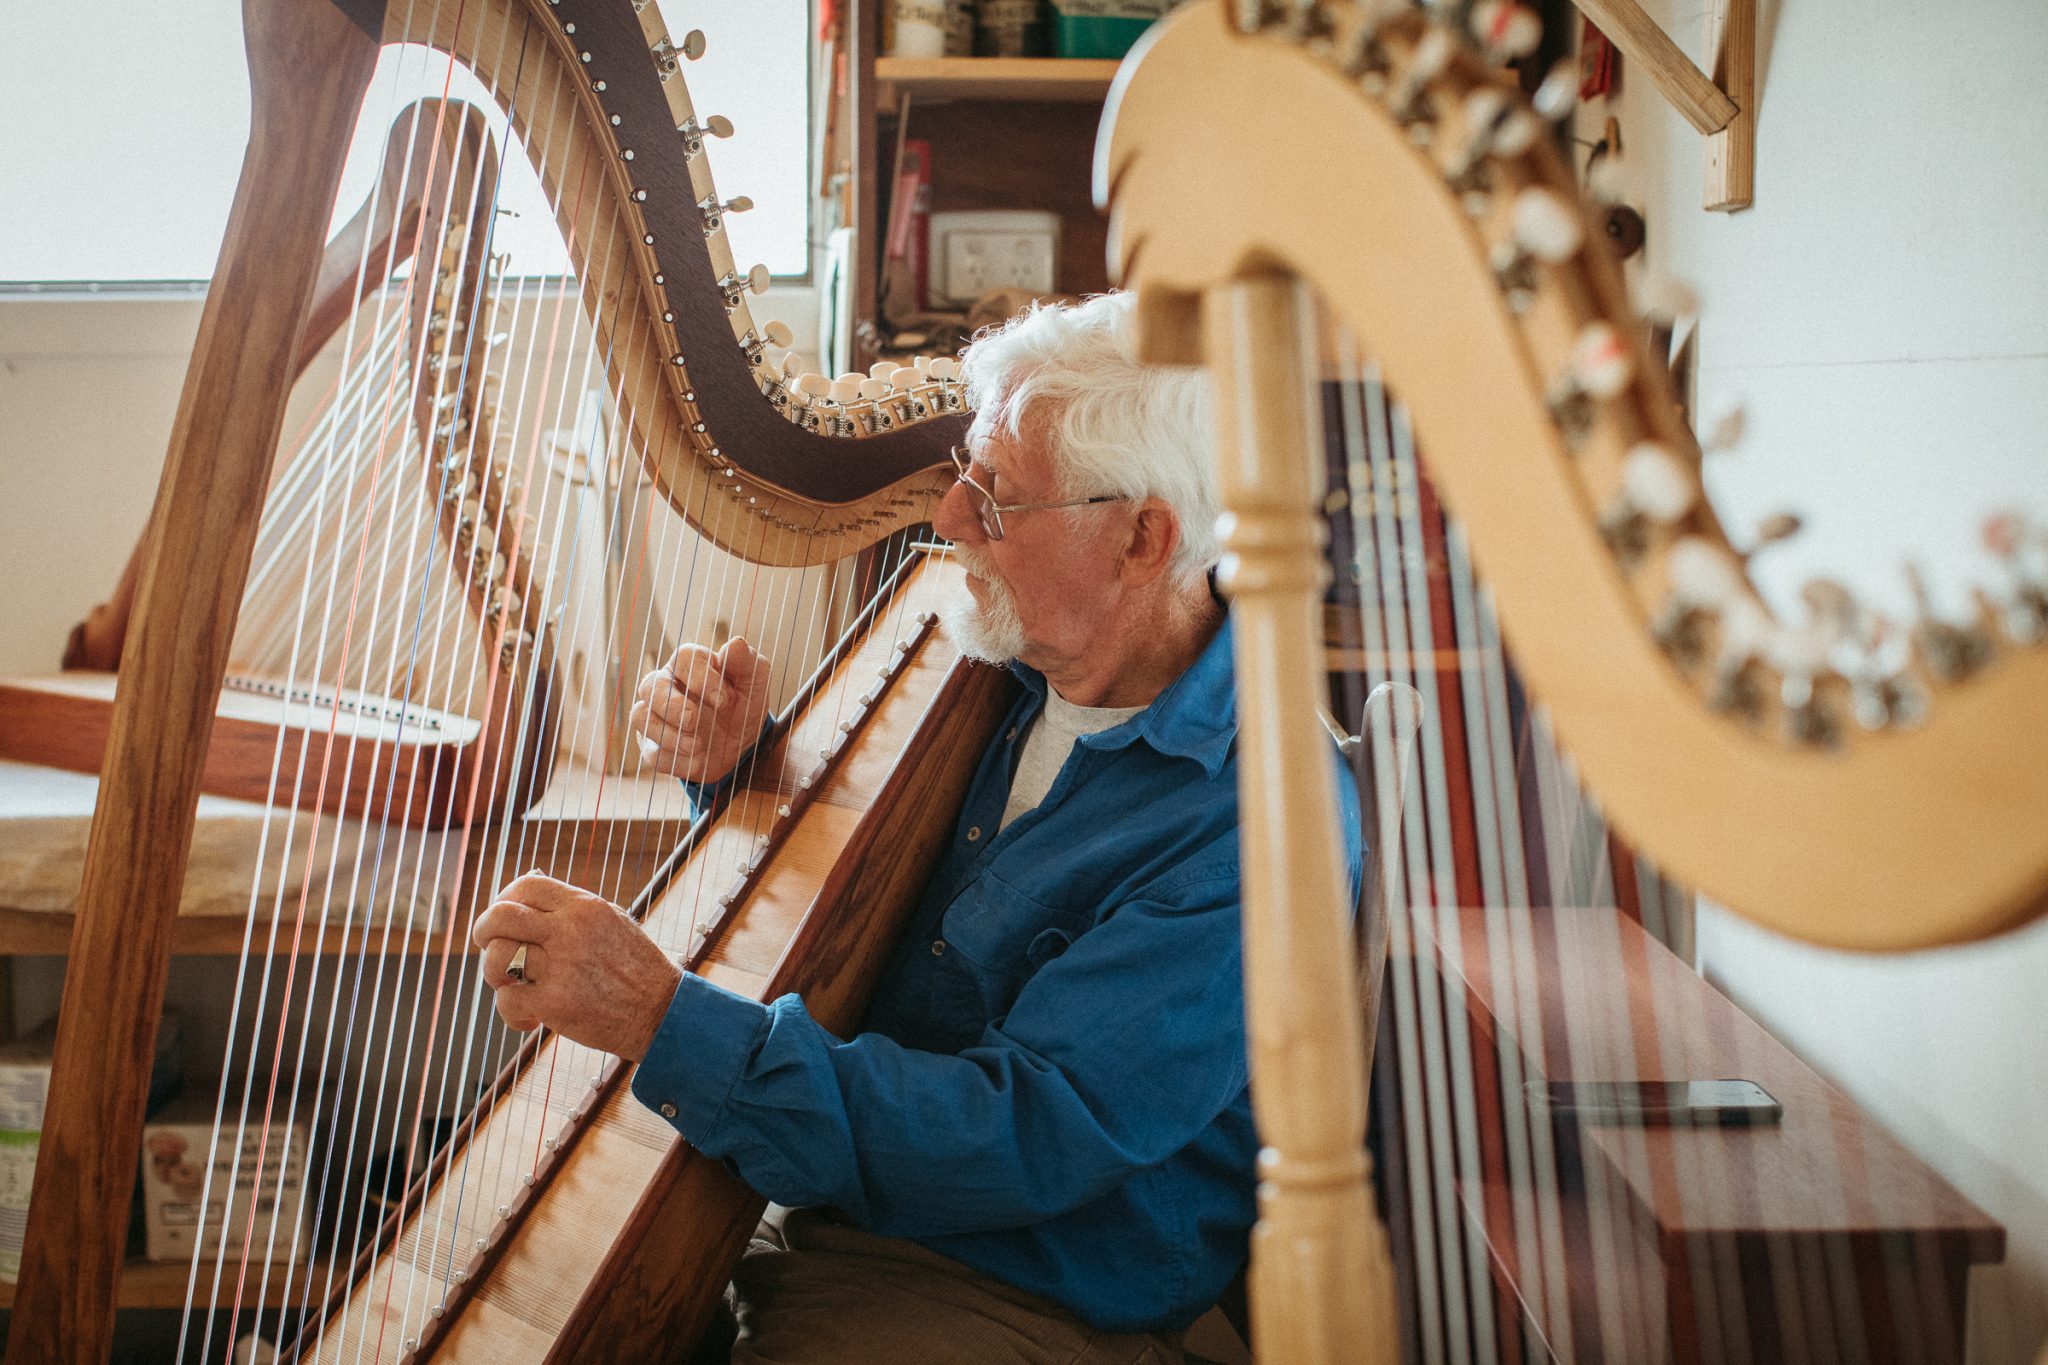 Cb Local: Meet a Harp Maker